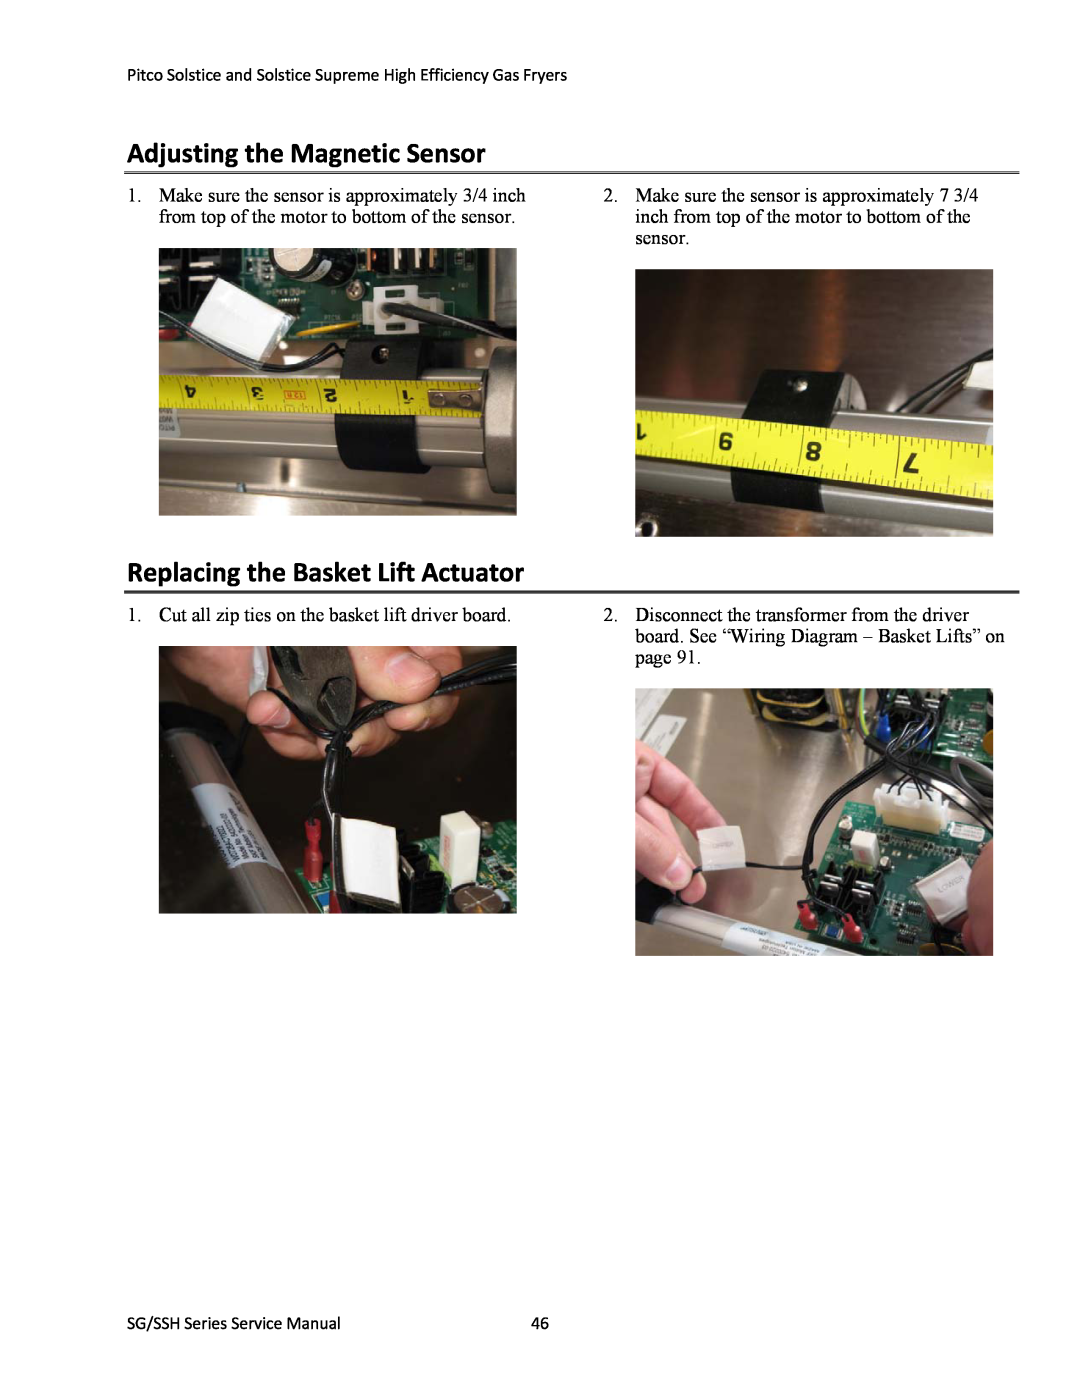 Pitco Frialator L22-345 manual Adjusting the Magnetic Sensor, Replacing the Basket Lift Actuator 